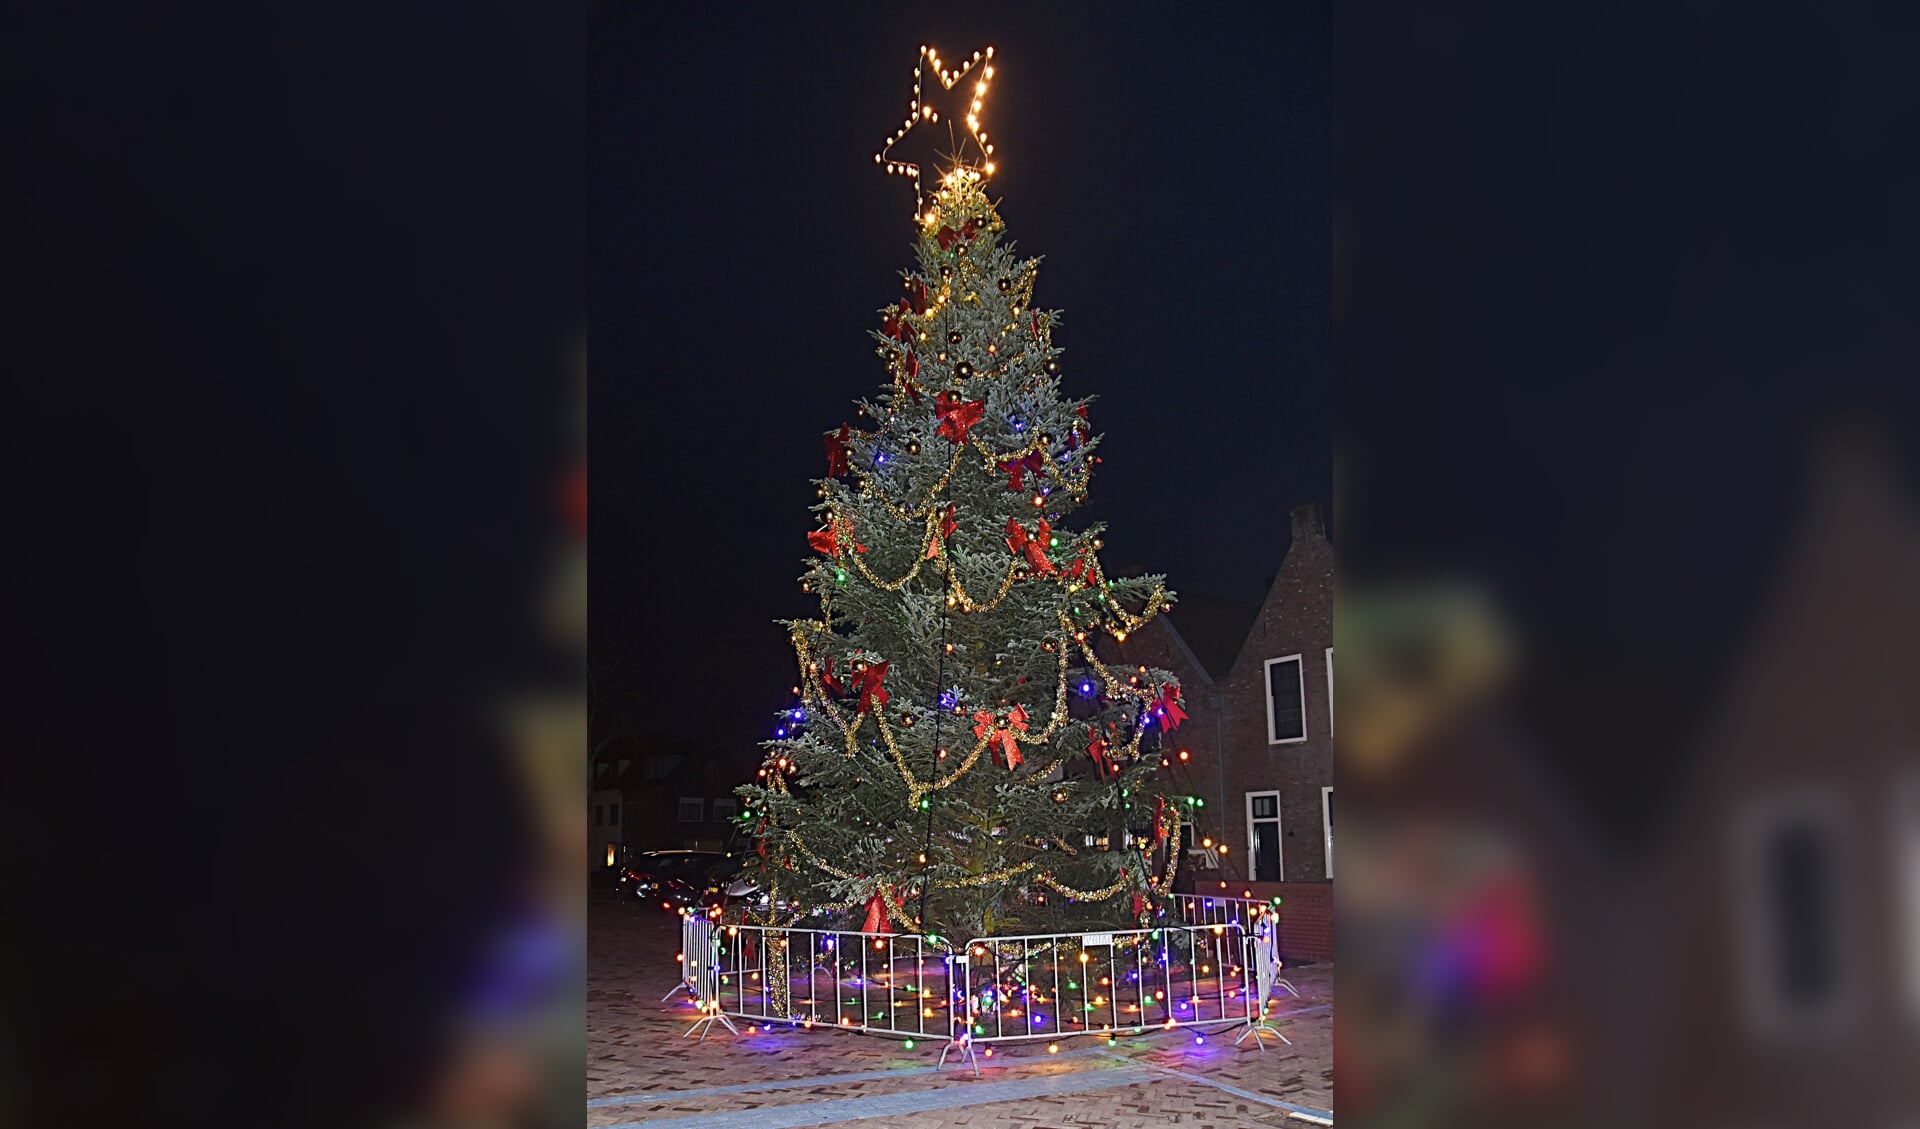 De reusachtige kerstboom op de Turfmarkt staat er weer. | Foto en tekst: Piet van Kampen